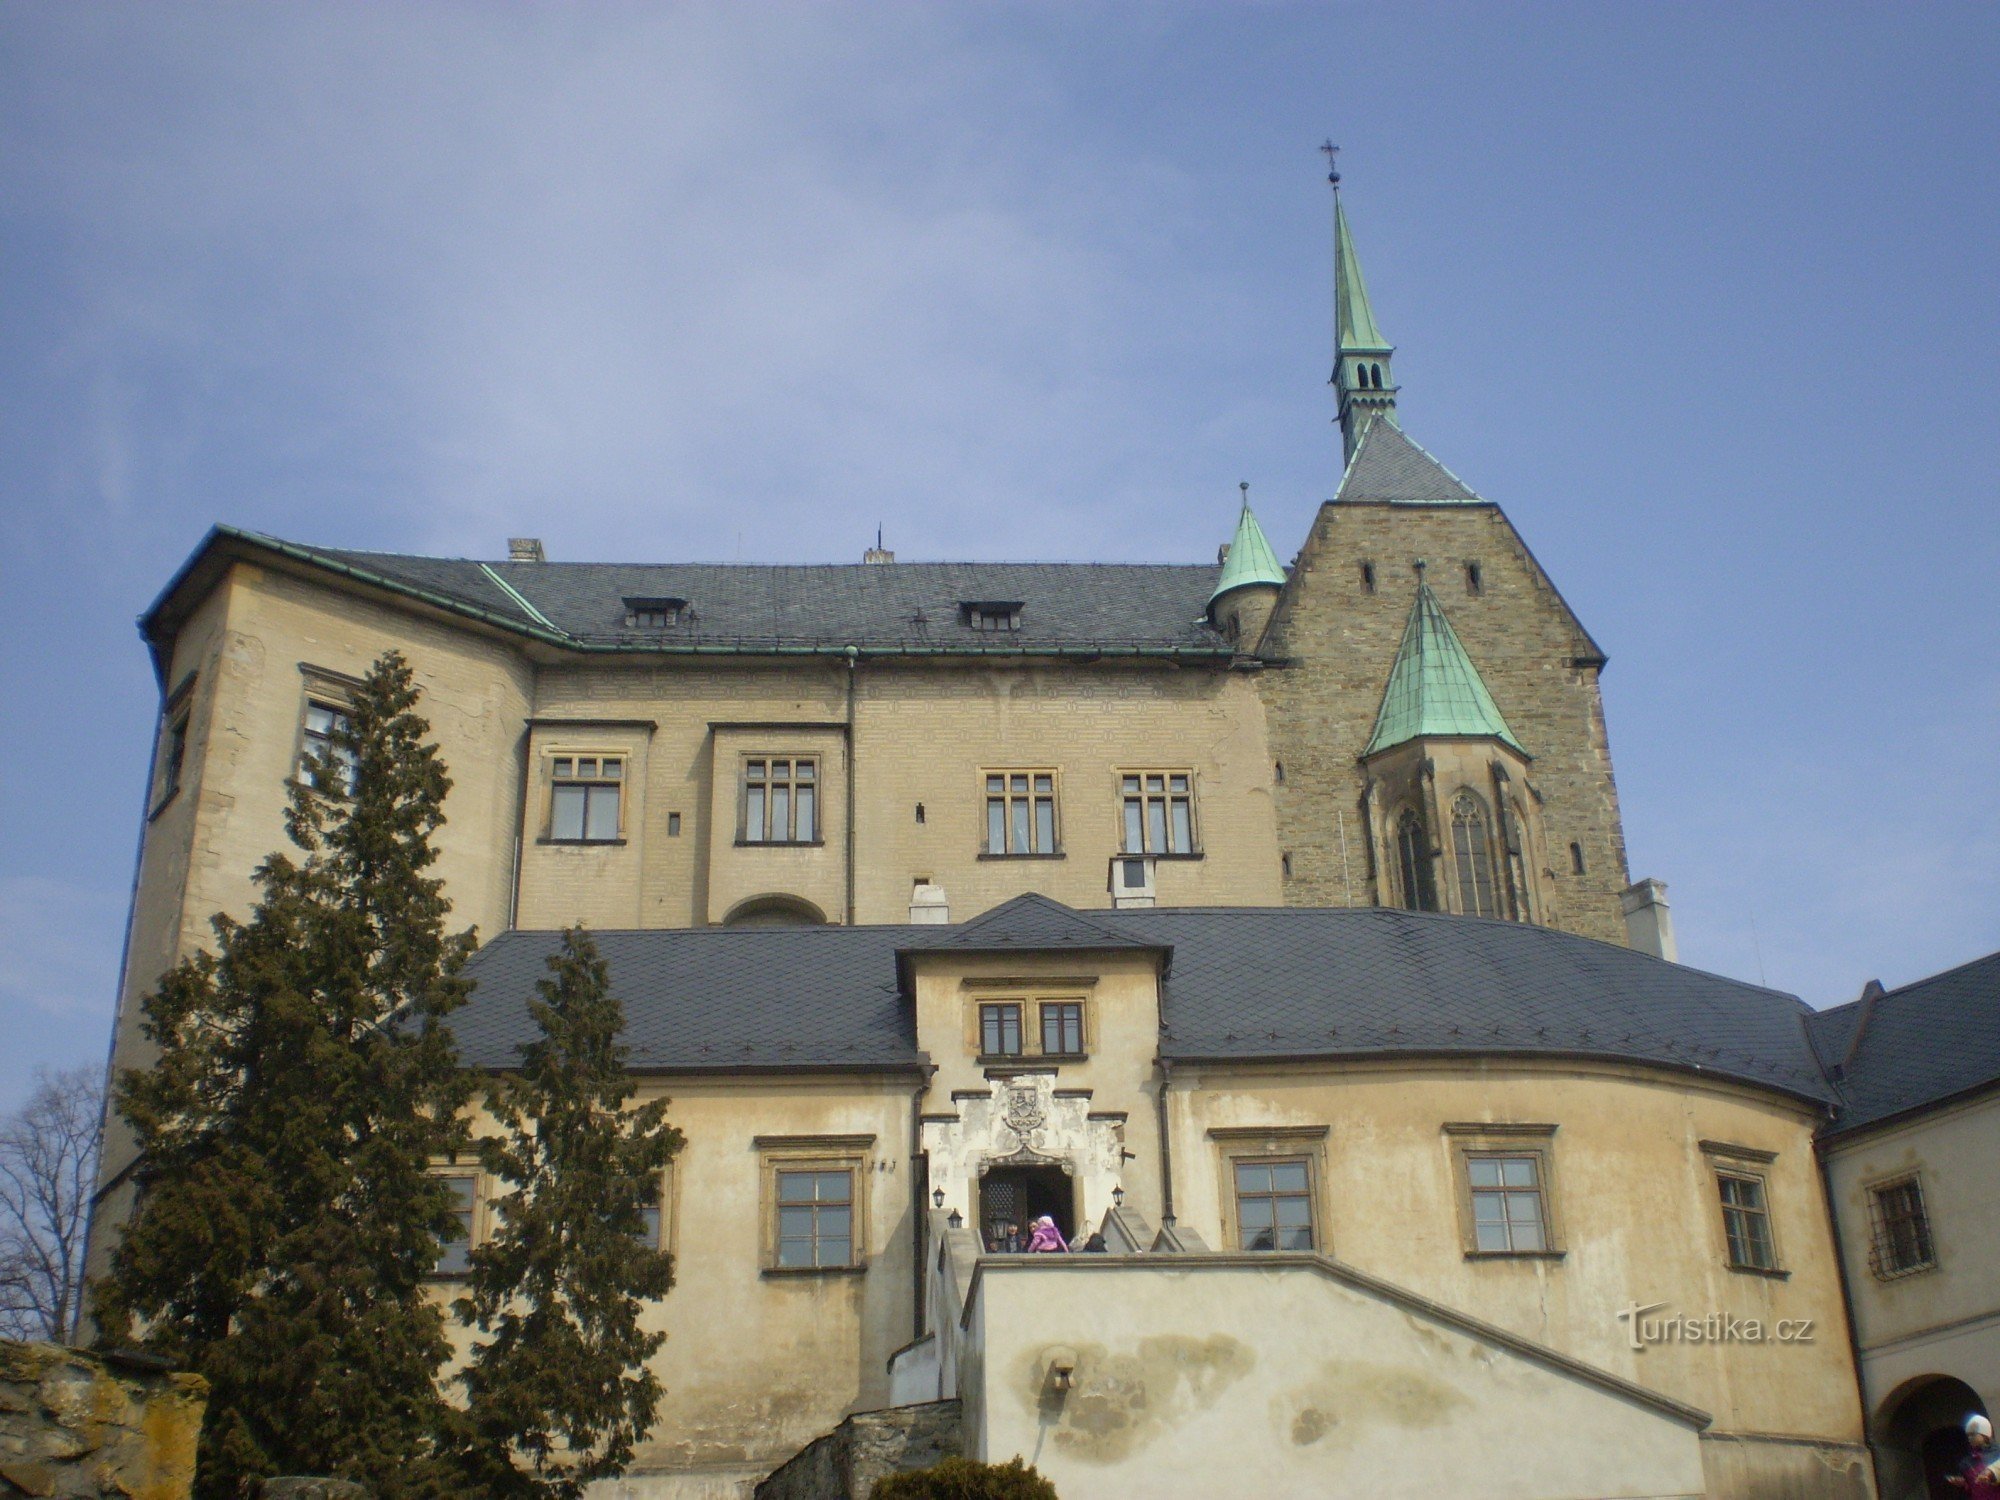 Замок Штернберк